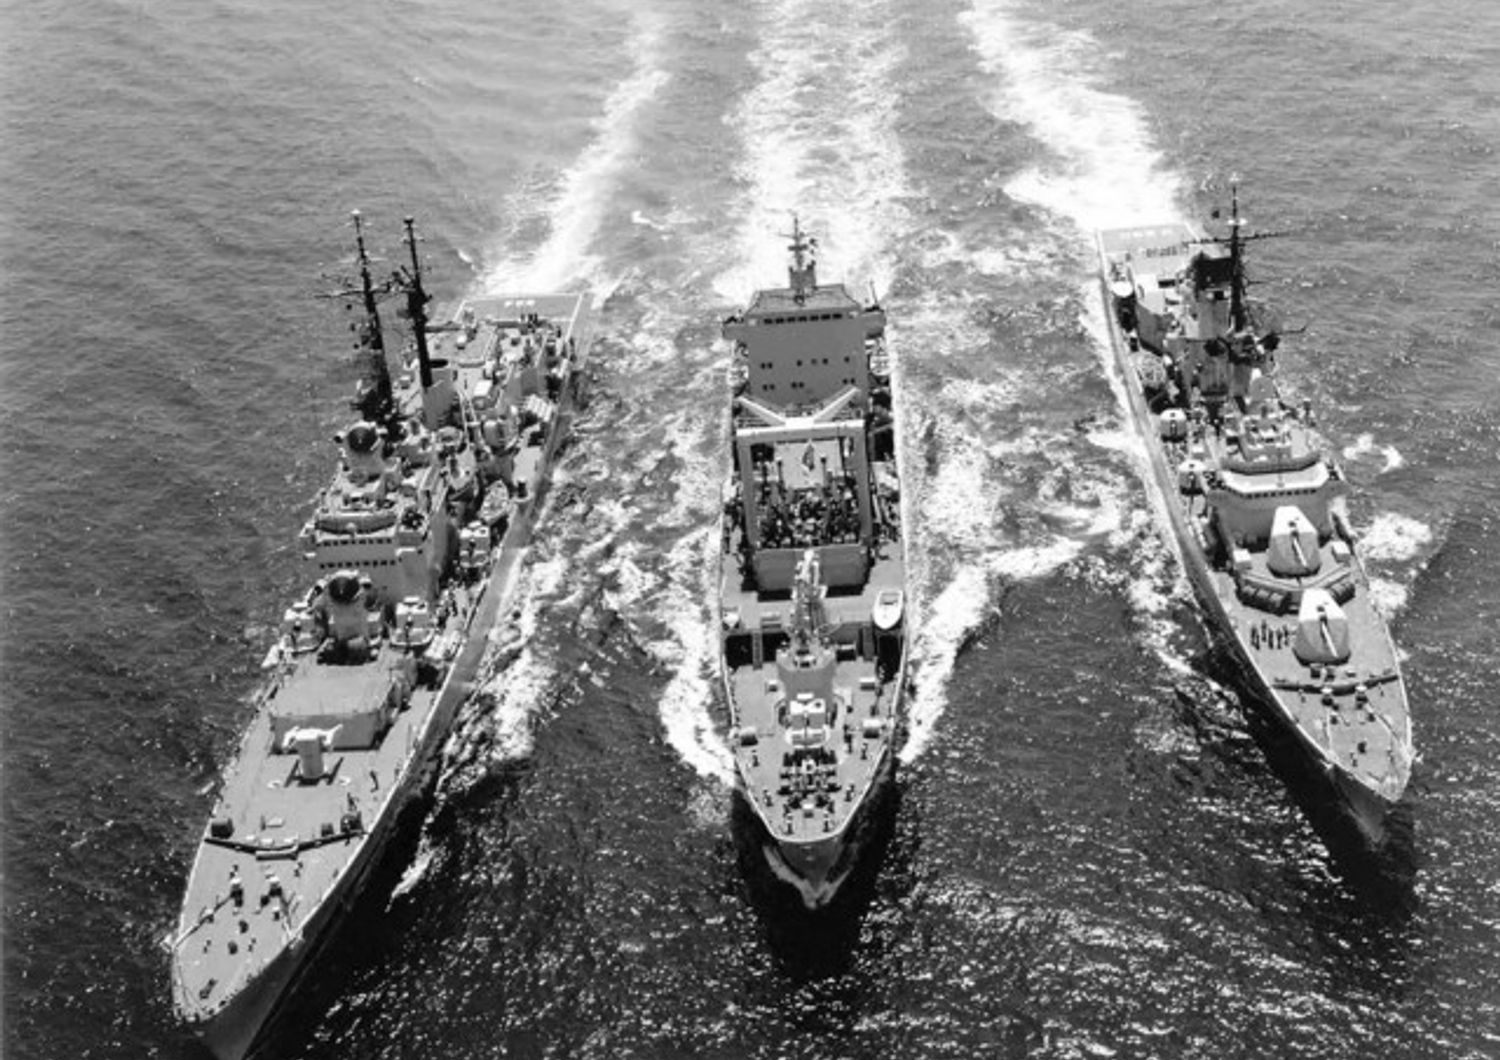 Il gruppo navale formato dagli incrociatori Vittorio Veneto e Andrea Doria e dalla nave appoggio Stromboli